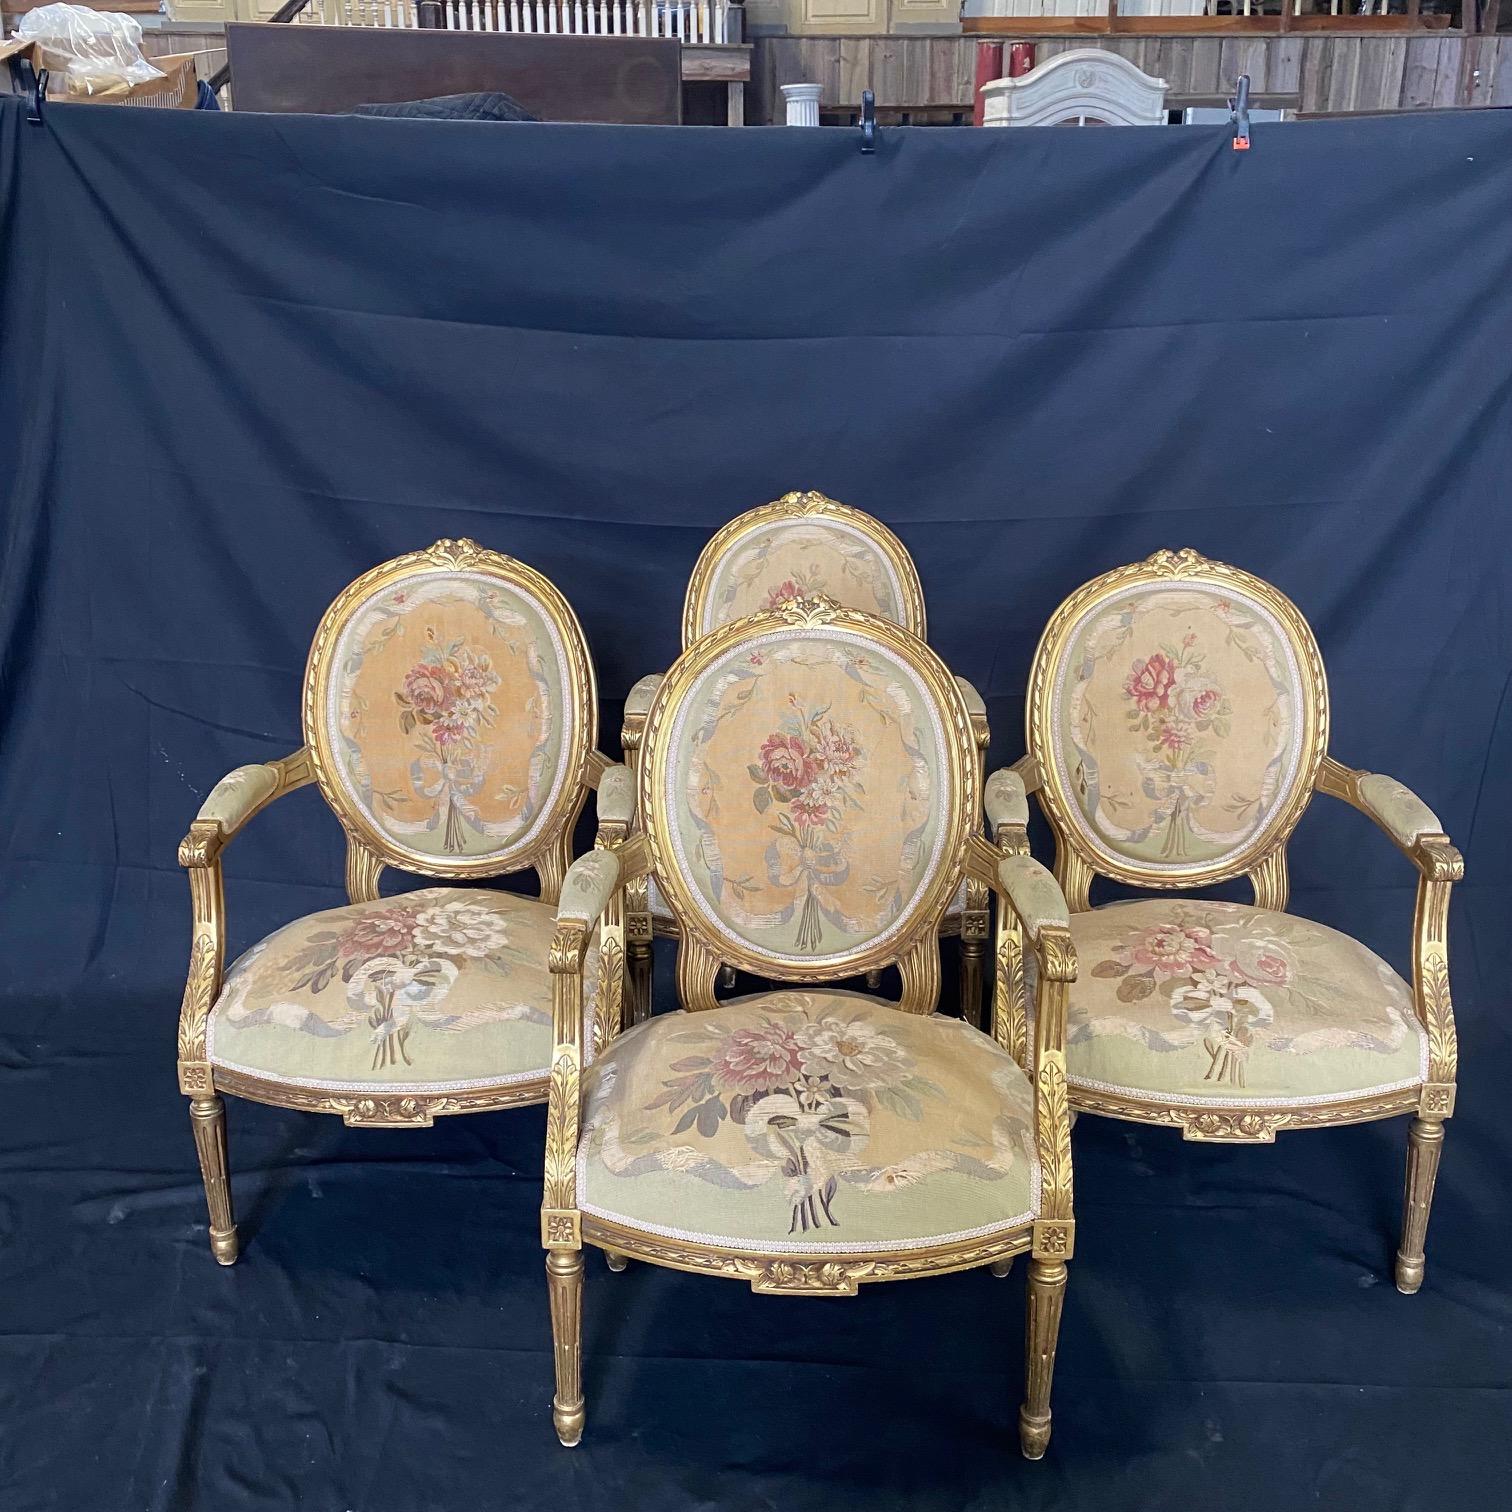 Eine prächtige fünfteilige französische Louis XVI-Sitzgarnitur aus geschnitztem Nussbaumholz aus dem 19. Jahrhundert, reich gepolstert mit außergewöhnlichen und seltenen handgewebten Aubusson-Tapeten. Das Set besteht aus vier Sesseln und einem Sofa